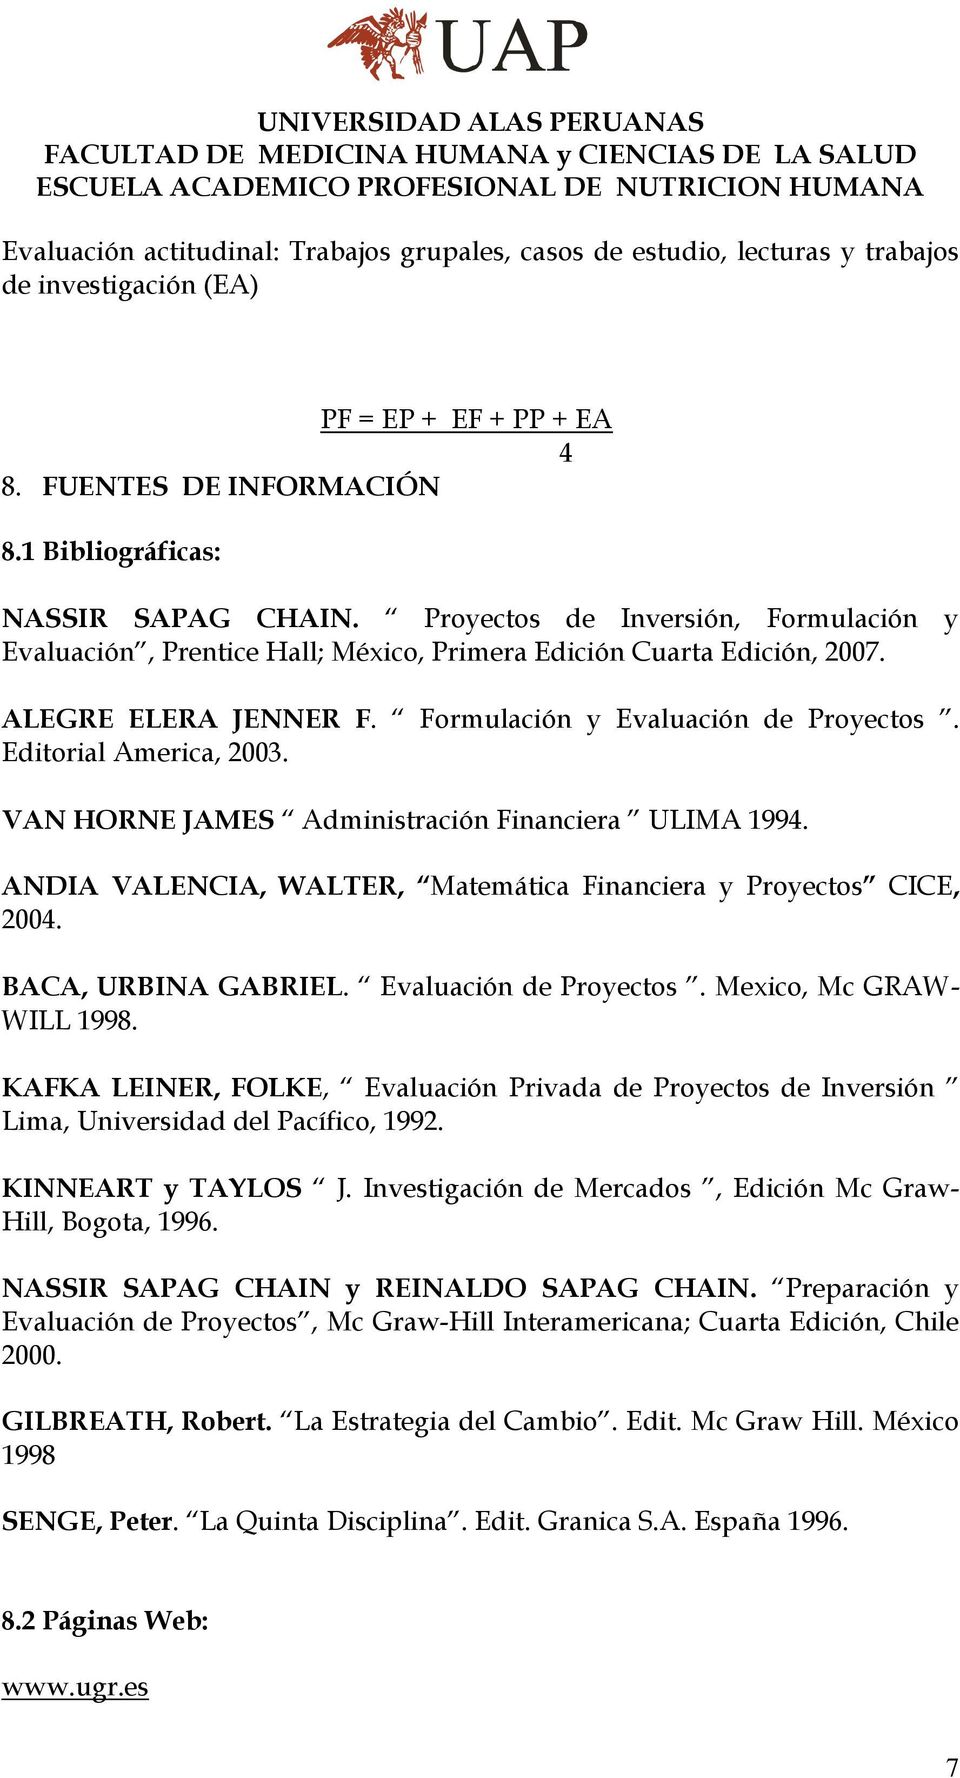 VAN HORNE JAMES Administración Financiera ULIMA 1994. ANDIA VALENCIA, WALTER, Matemática Financiera y Proyectos CICE, 2004. BACA, URBINA GABRIEL. Evaluación de Proyectos. Mexico, Mc GRAW- WILL 1998.